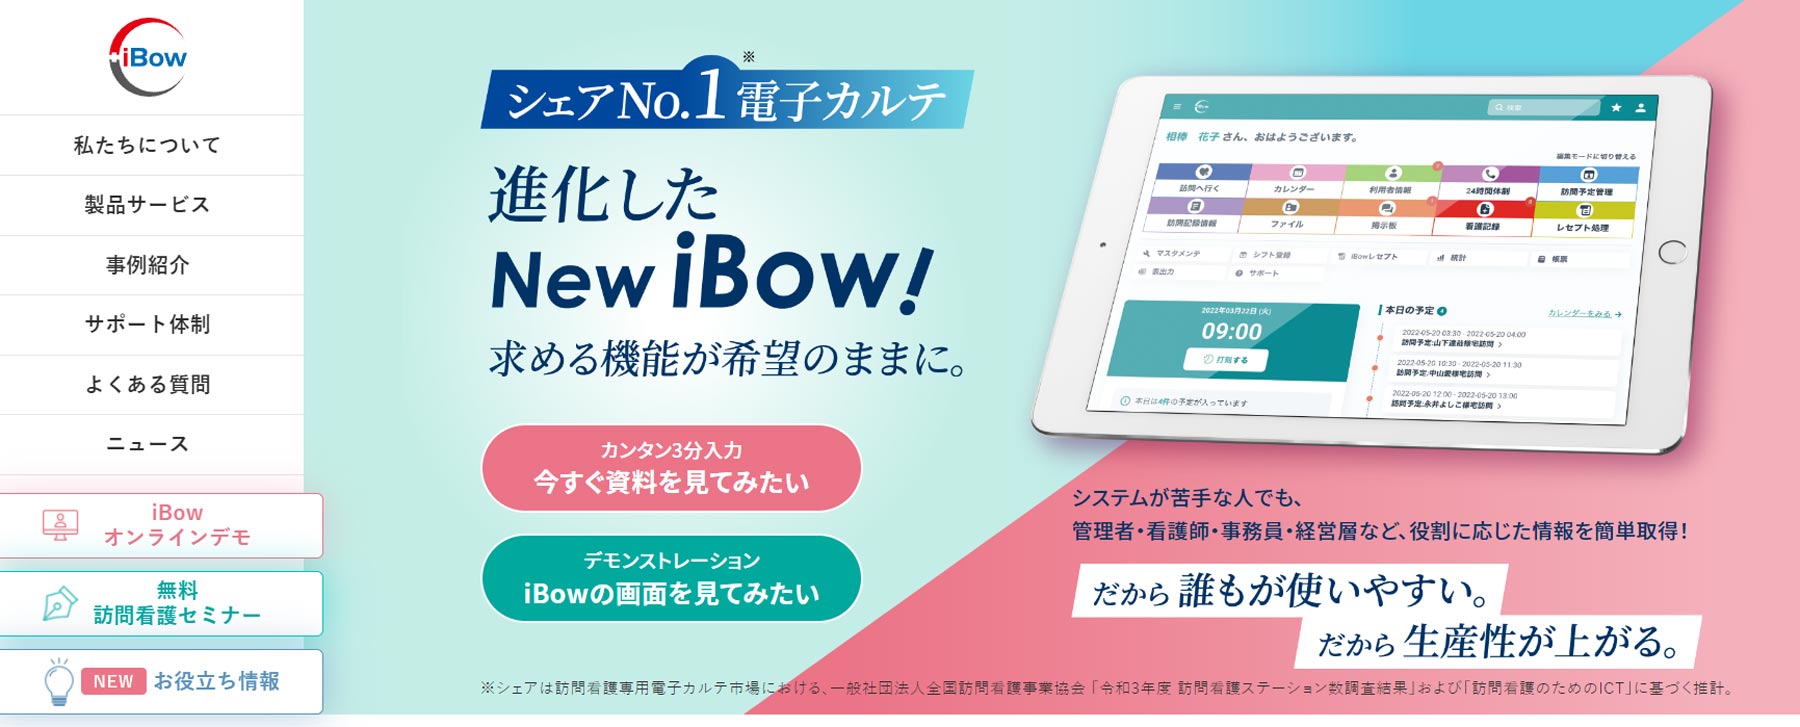 iBow公式Webサイト